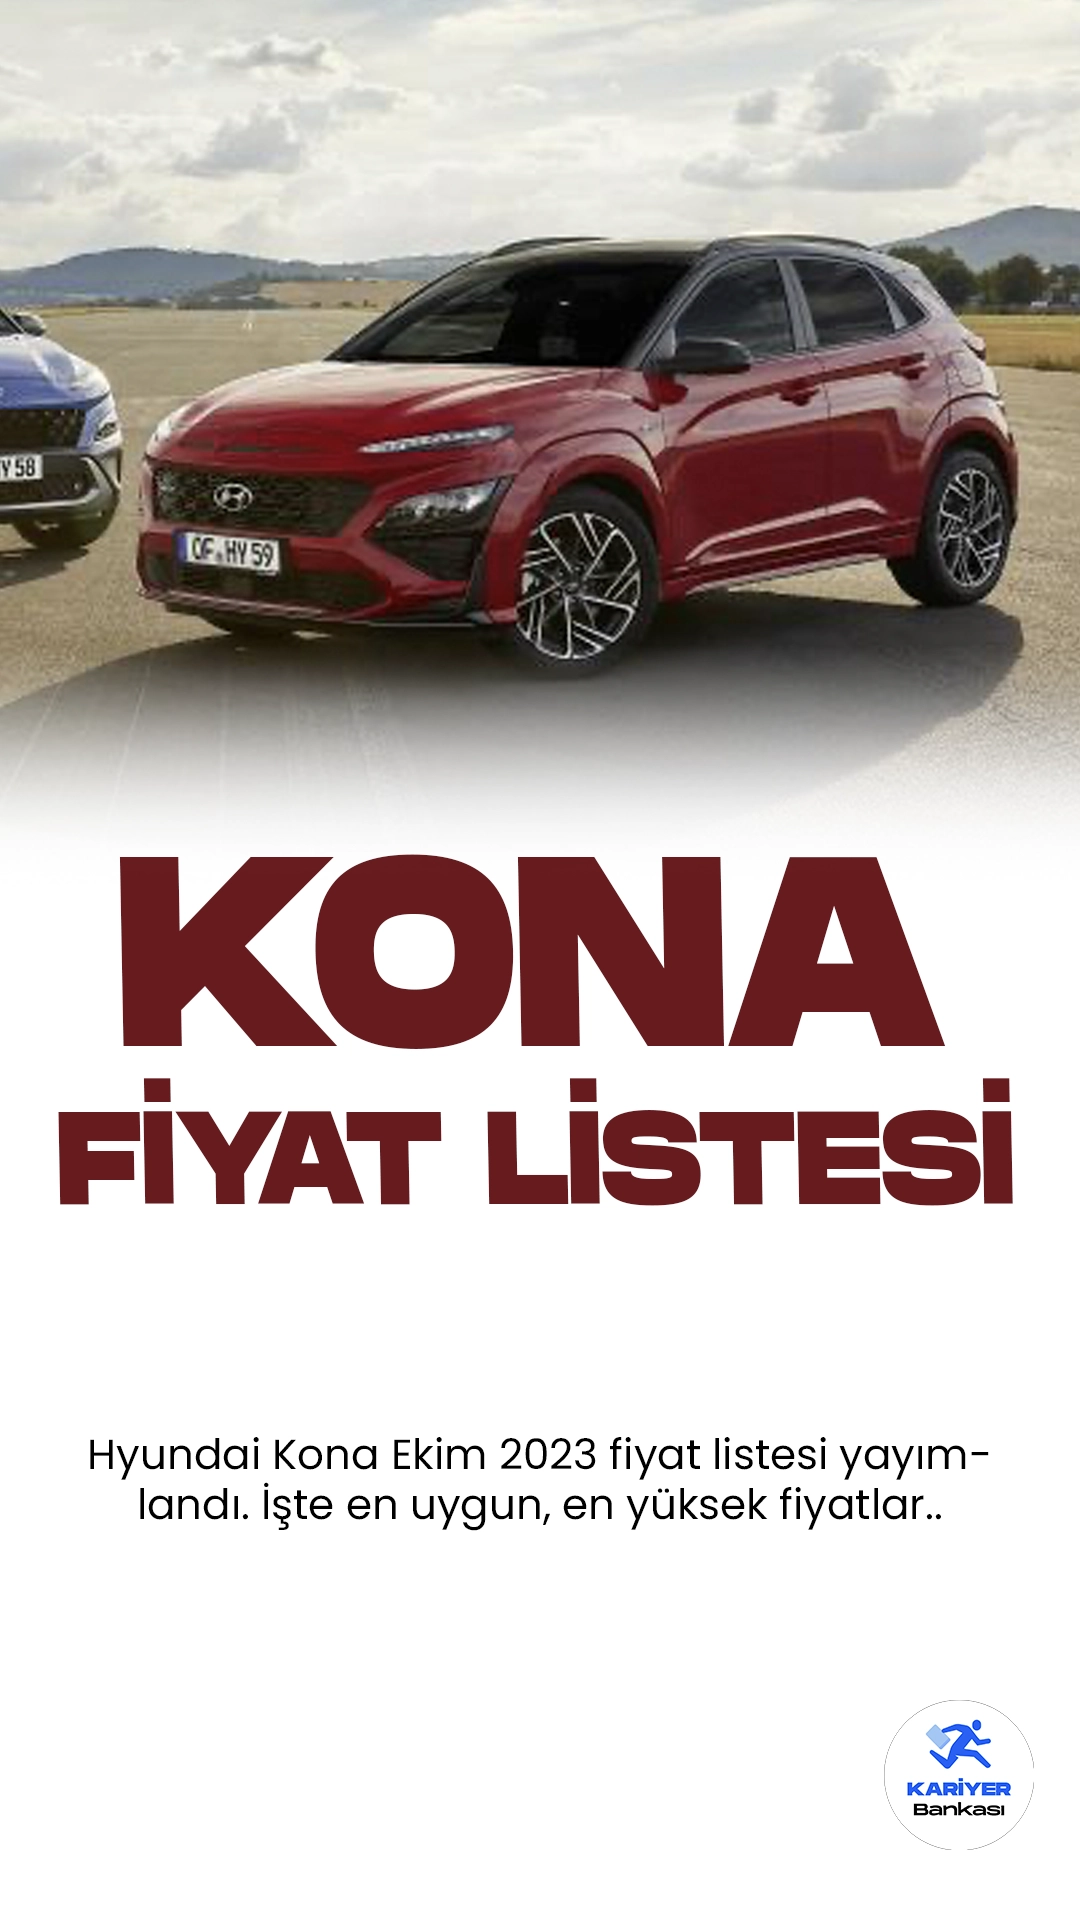 Hyundai Kona Ekim 2023 Fiyat Listesi Yayımlandı.Hyundai Kona, kompakt SUV segmentinde dikkat çeken bir araç olarak karşımıza çıkıyor. Modern tasarımı ve güçlü performansı ile dikkatleri üzerine çeken Kona, sürücülere şehir içi ve uzun yol seyahatlerinde mükemmel bir deneyim sunuyor. Aracın iç mekanı geniş ve konforlu, aynı zamanda son teknoloji özelliklerle donatılmış durumda. Hyundai Kona, çevre dostu bir seçenek olarak da öne çıkıyor; elektrikli ve hibrit motor seçenekleri ile kullanıcılarına çevre bilincini yansıtan bir tercih sunuyor. Güvenlik donanımları ise sürücülerin ve yolcuların güvenliğini en üst seviyede sağlıyor. Hyundai Kona, şıklık, performans ve güvenliği bir arada sunan bir otomobil olarak öne çıkıyor.